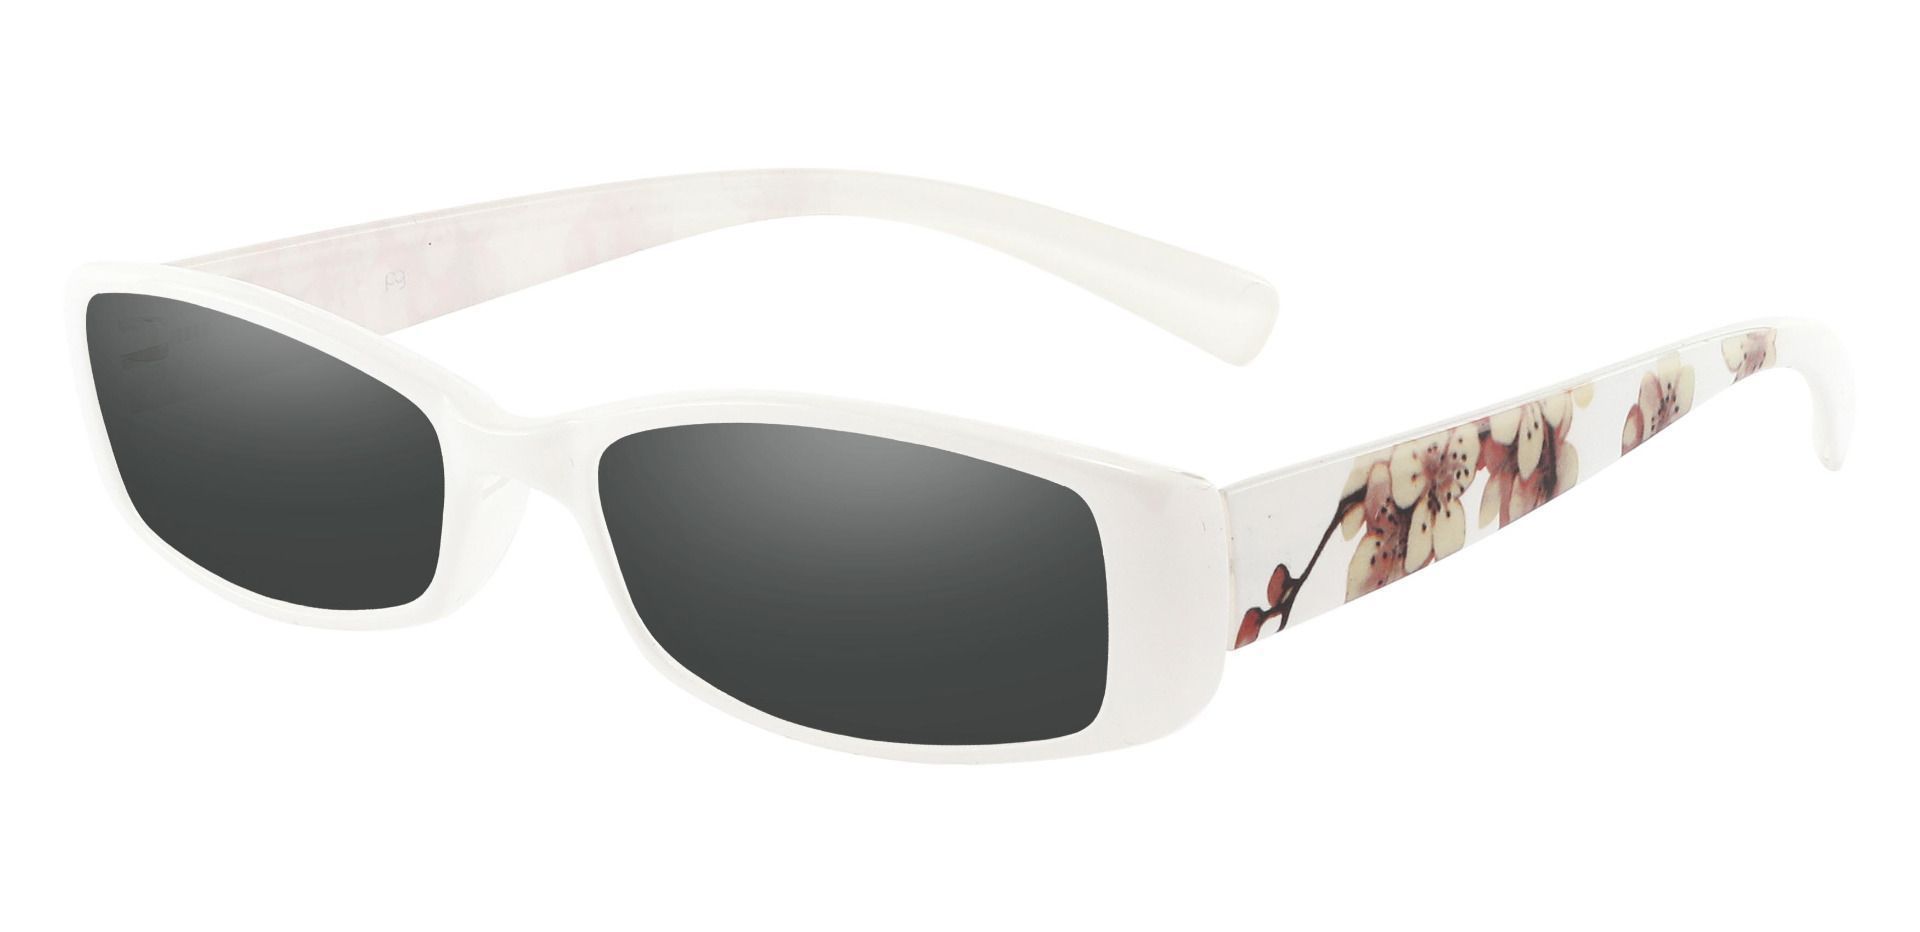 Medora Rectangle Reading Sunglasses - White Frame With Gray Lenses